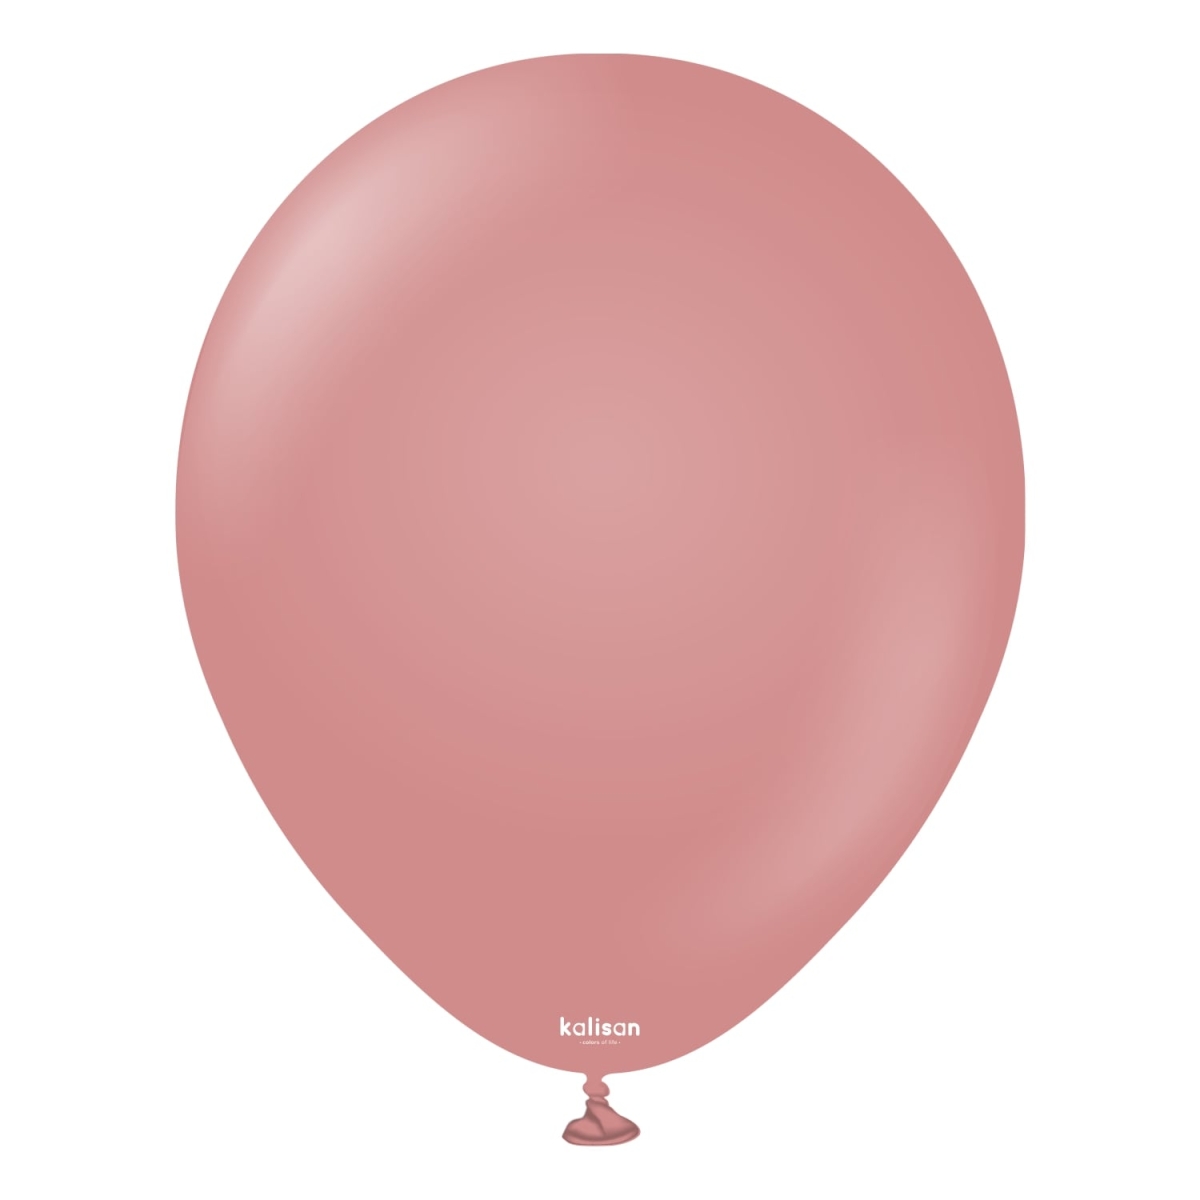 KALISAN (50) 11" Retro Rosewood balloons